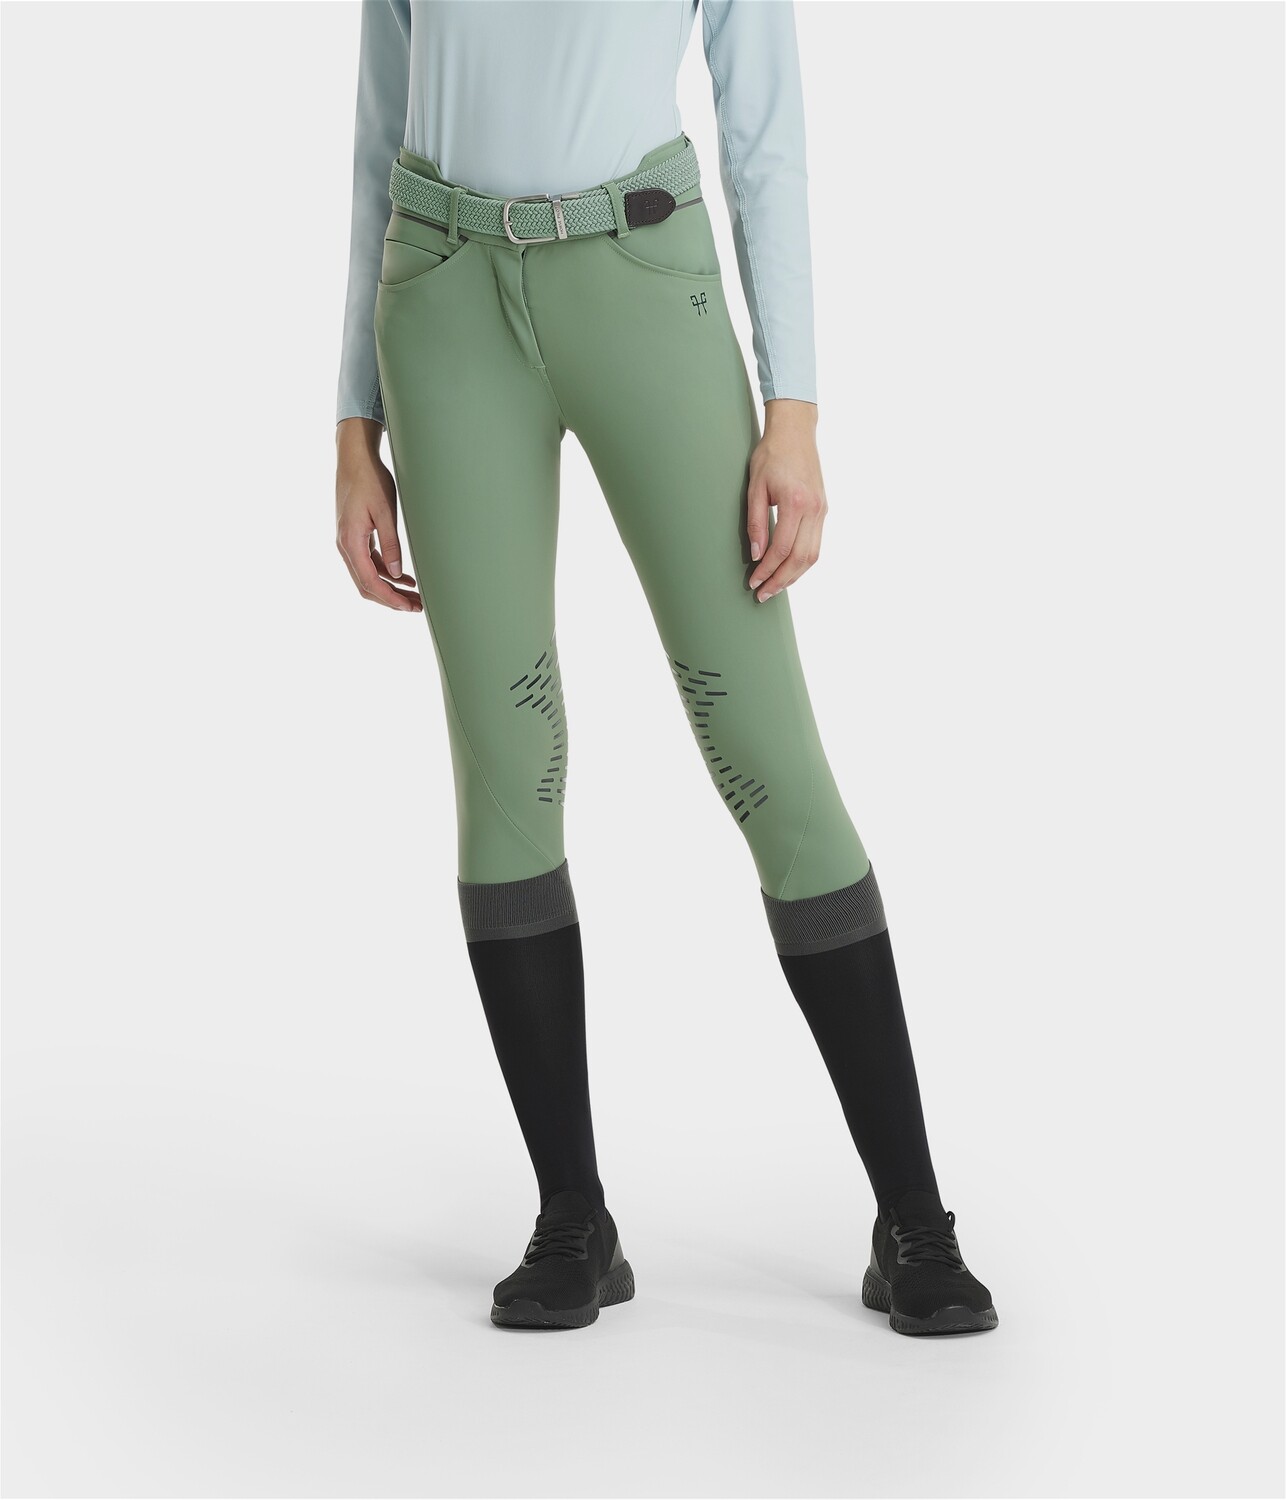 Pantalon X-Design Horse Pilot pour femmes Smoothgreen